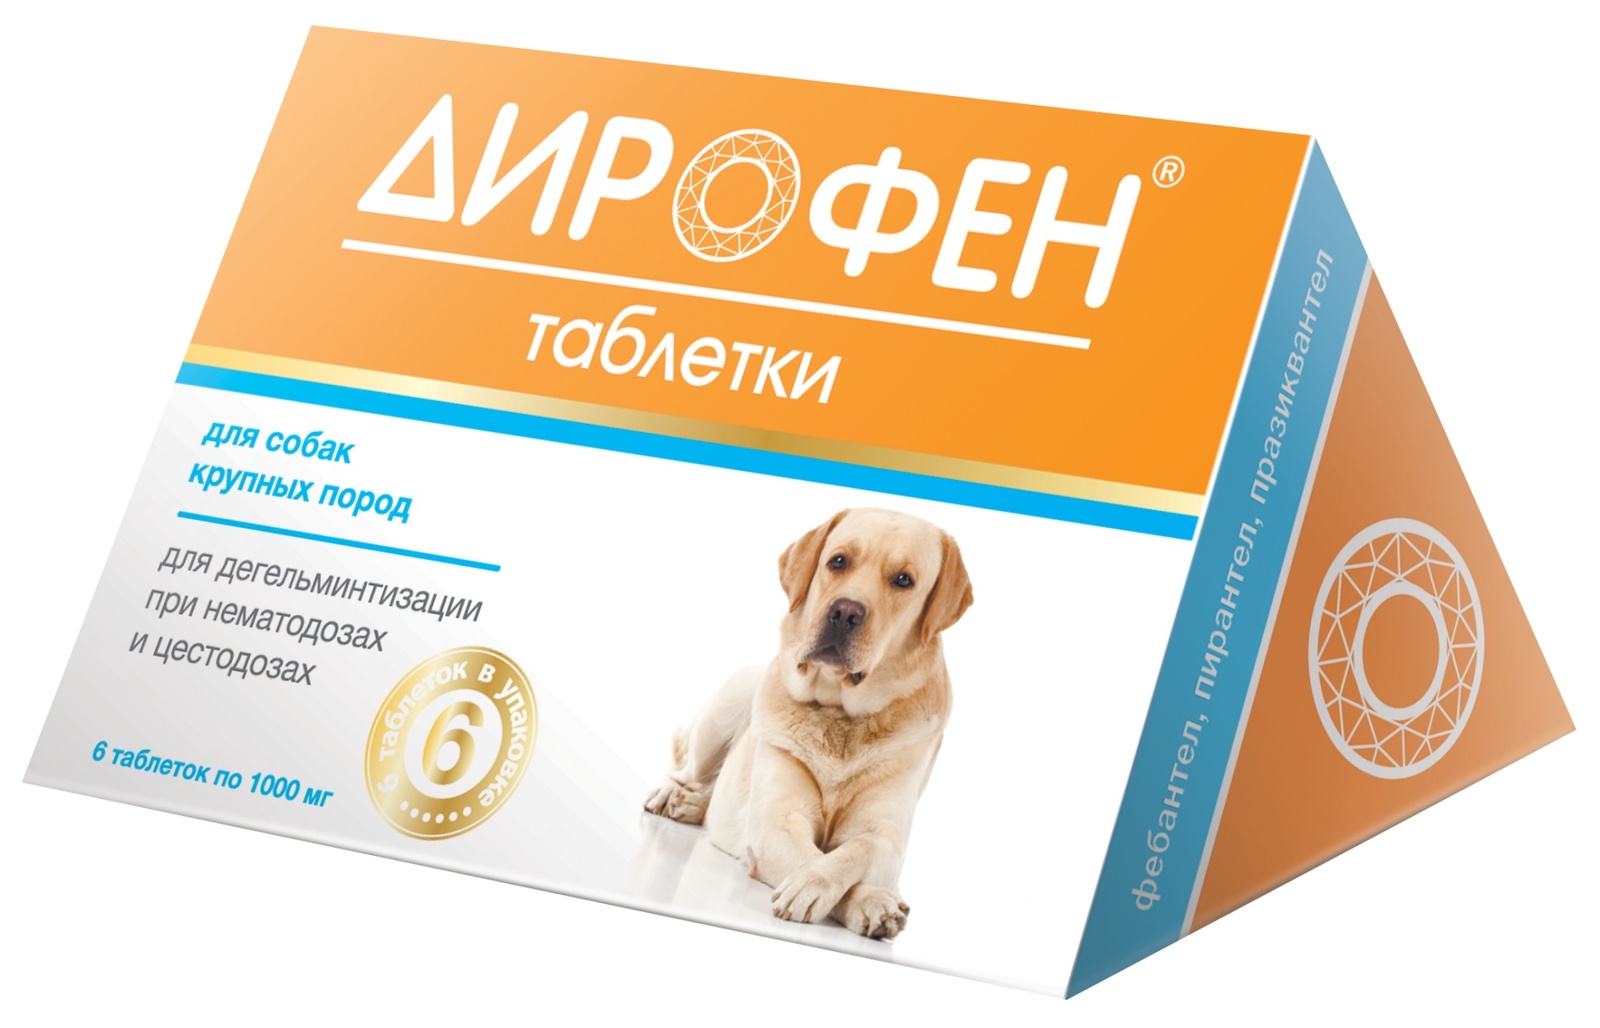 apicenna дирофен плюс таблетки для собак крупных пород 6 таблеток 2 штуки Apicenna Apicenna дирофен Плюс таблетки от глистов для крупных собак (19 г)